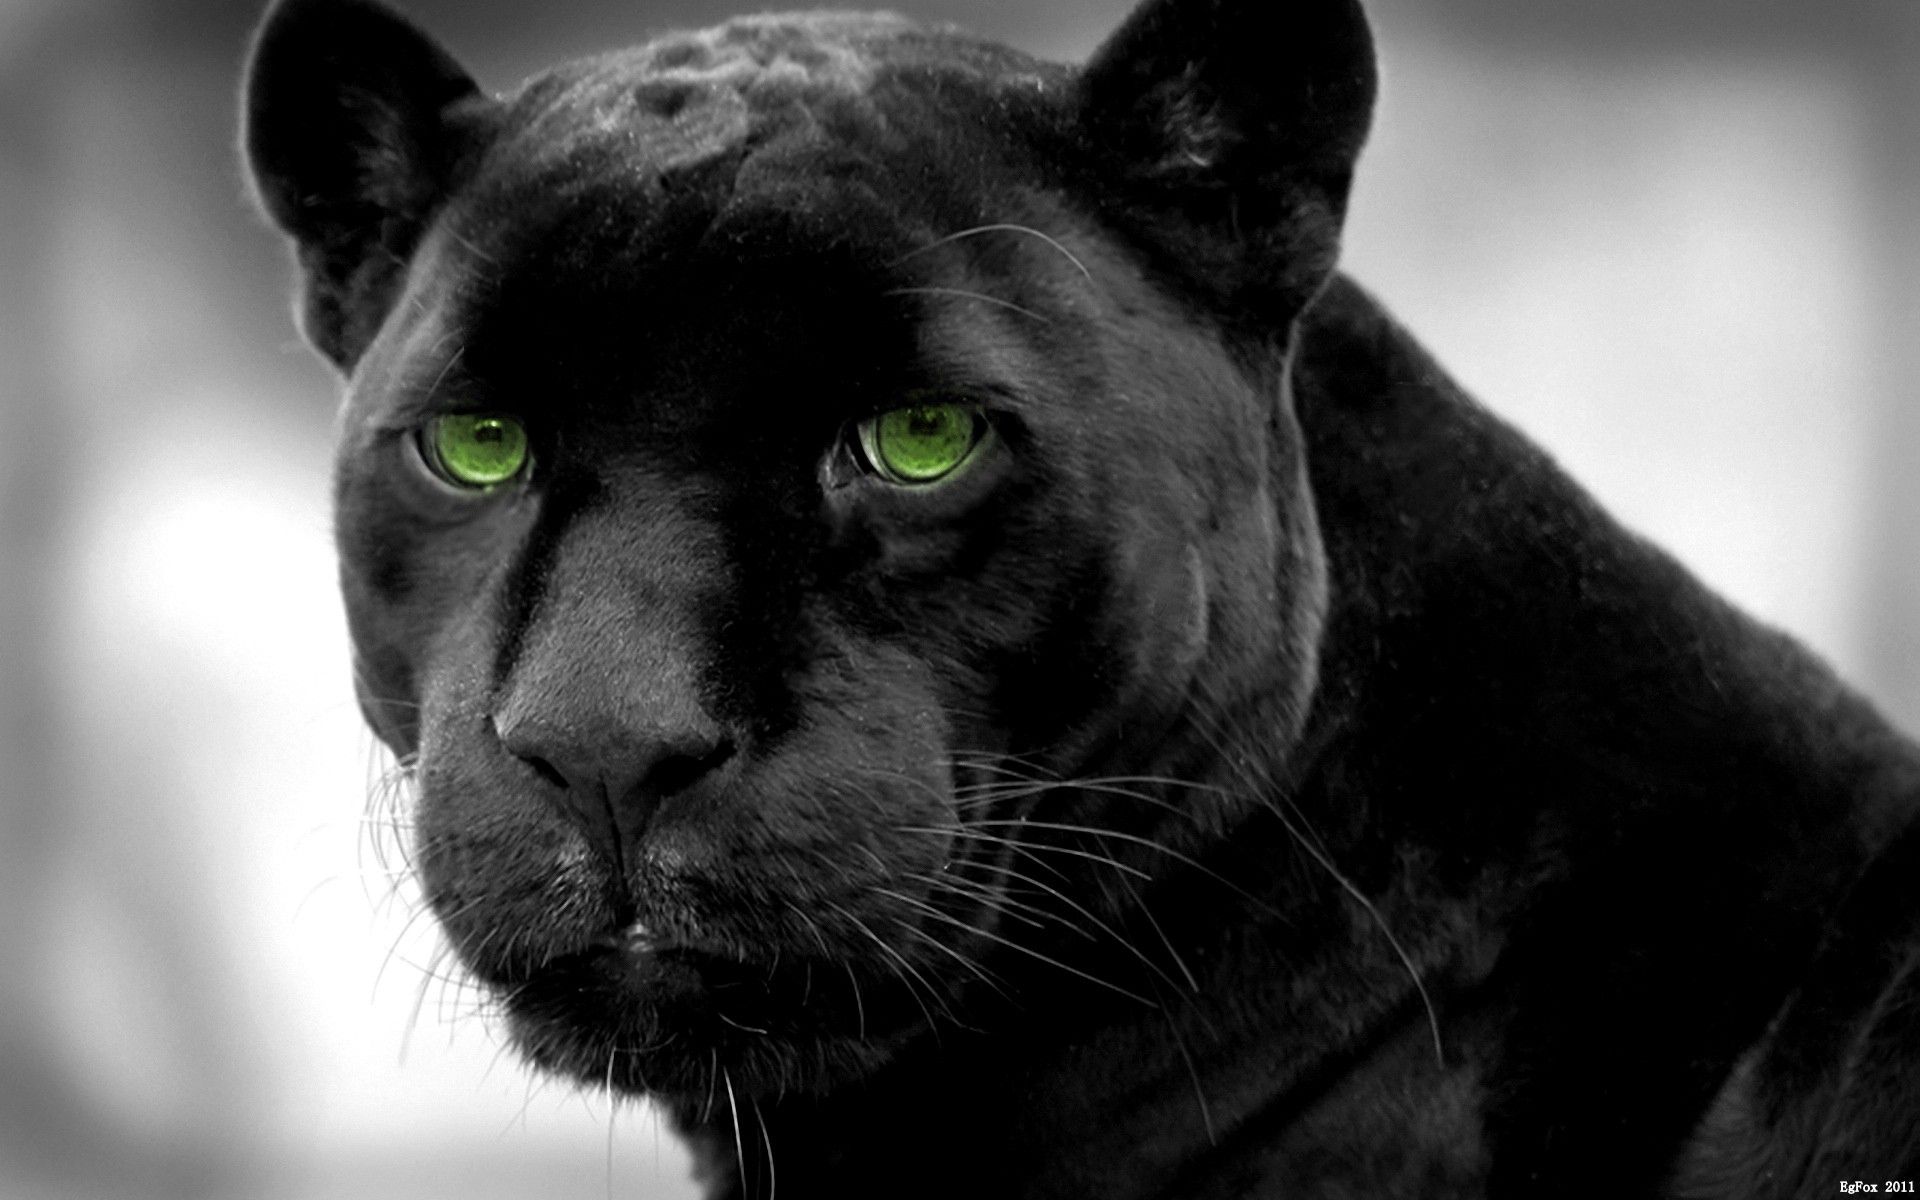 Panther.jpg